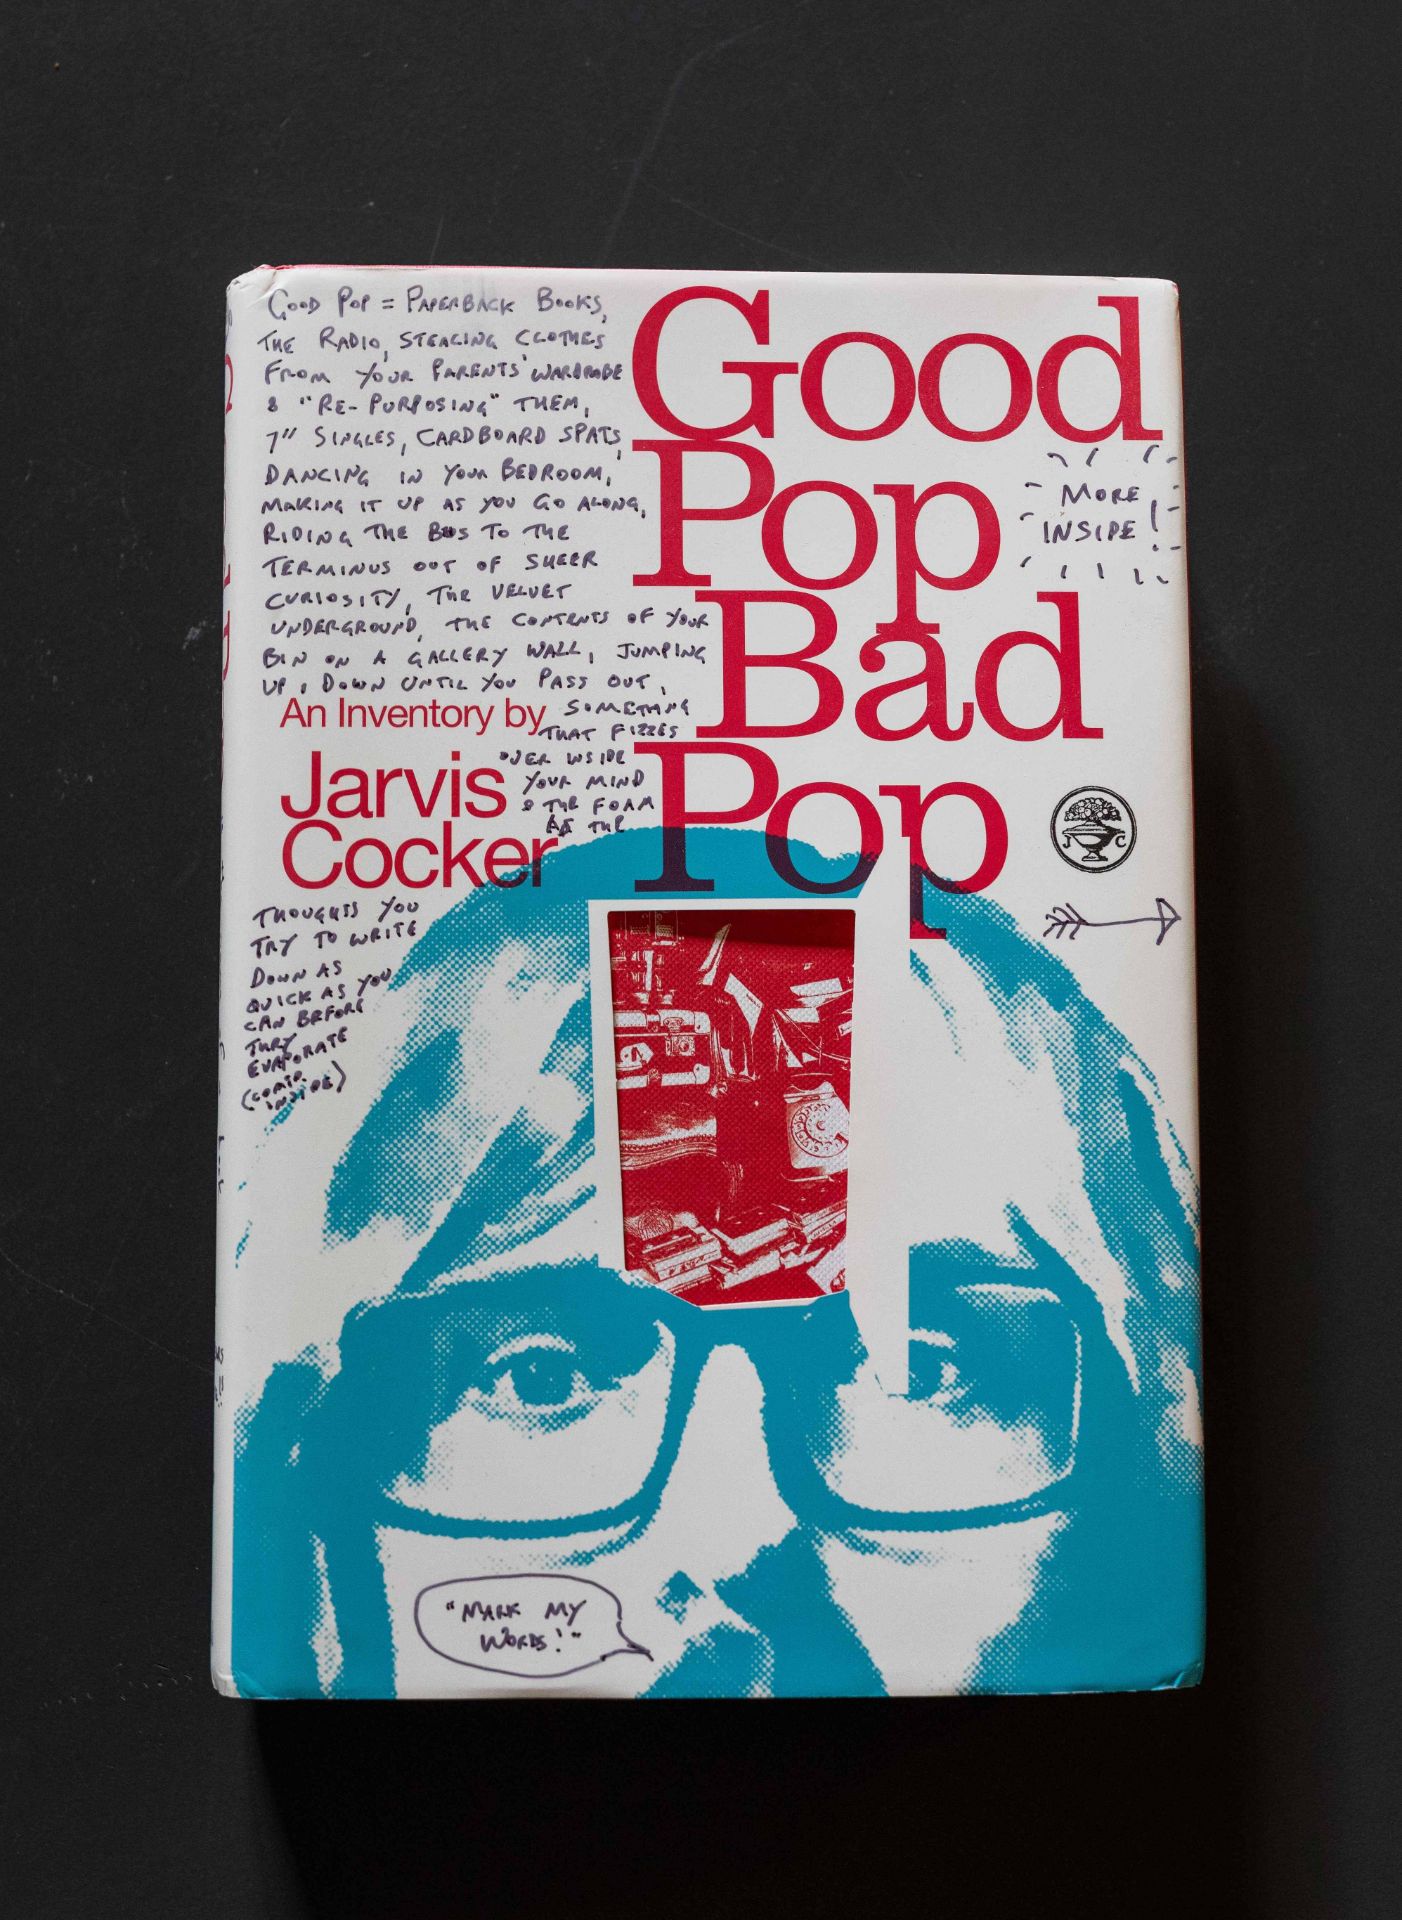 "Good Pop Bad Pop" von Jarvis Cocker